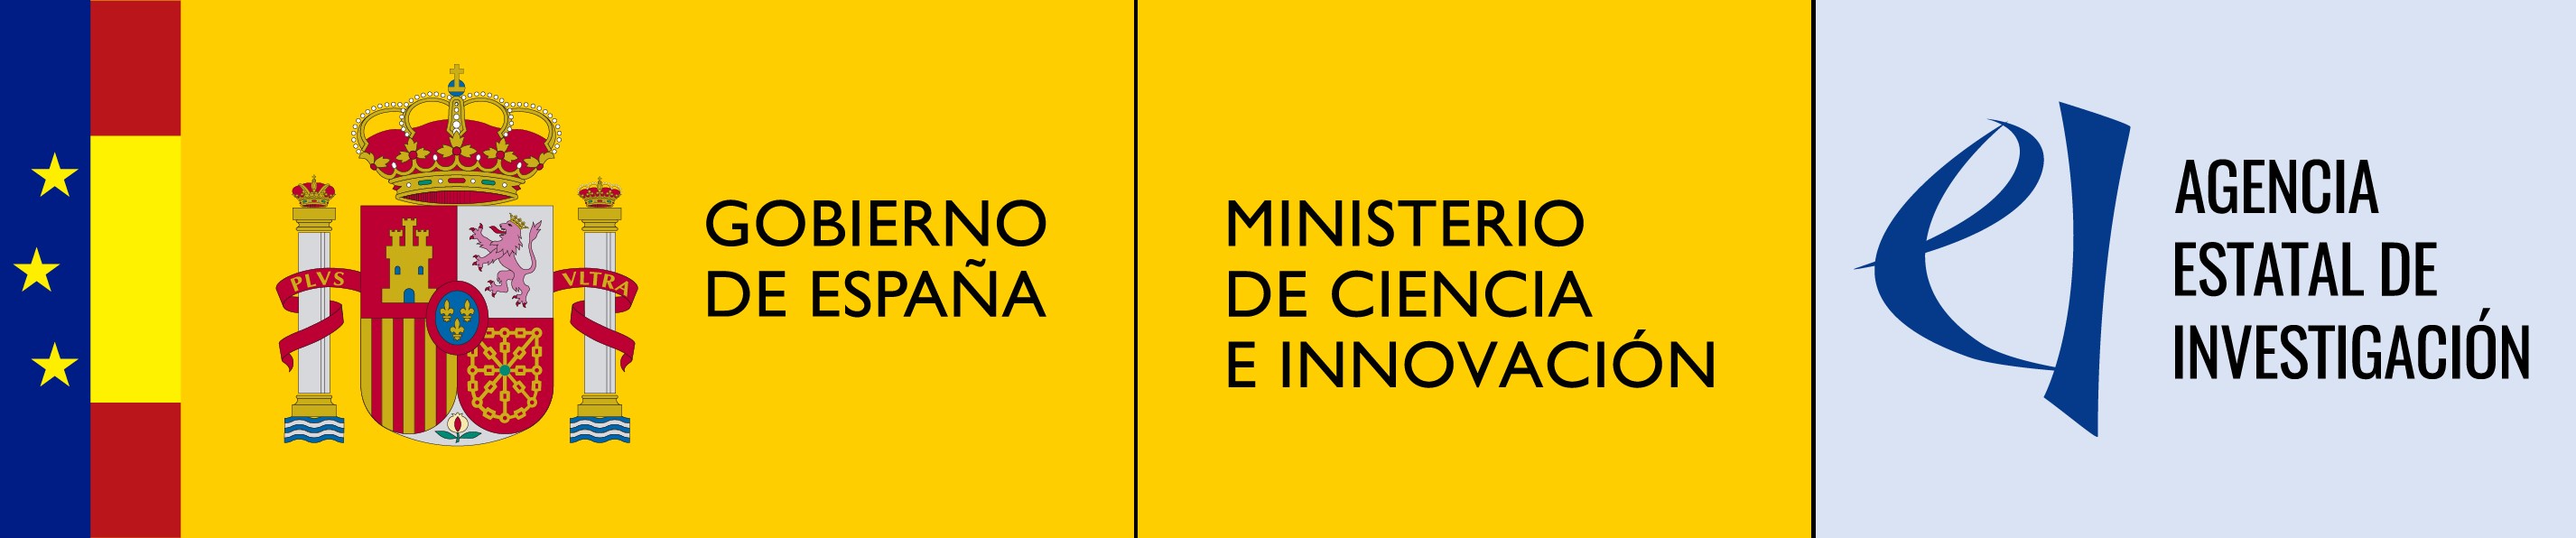 Ministerio Ciencia e Innovación - Agencia Estatal de Investigación